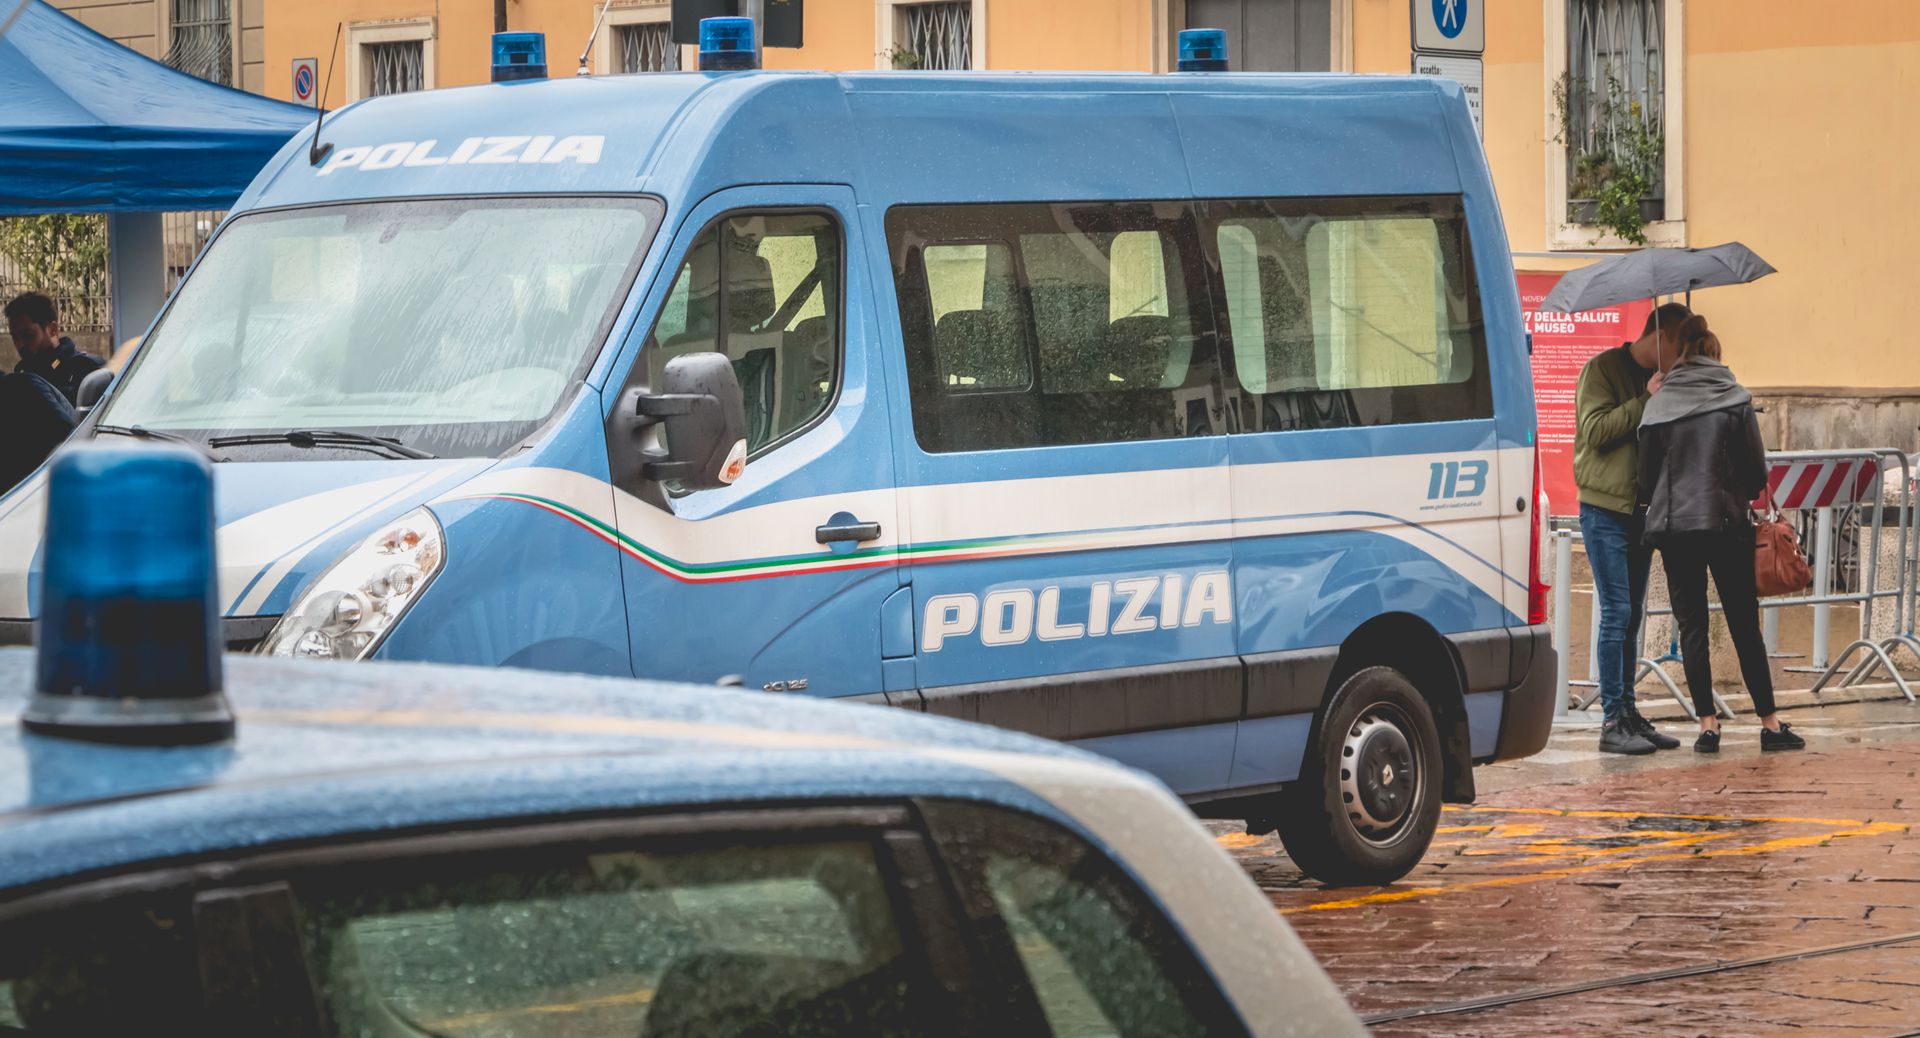 Tragedia w Palermo. Śmierć 44-letniej Polki